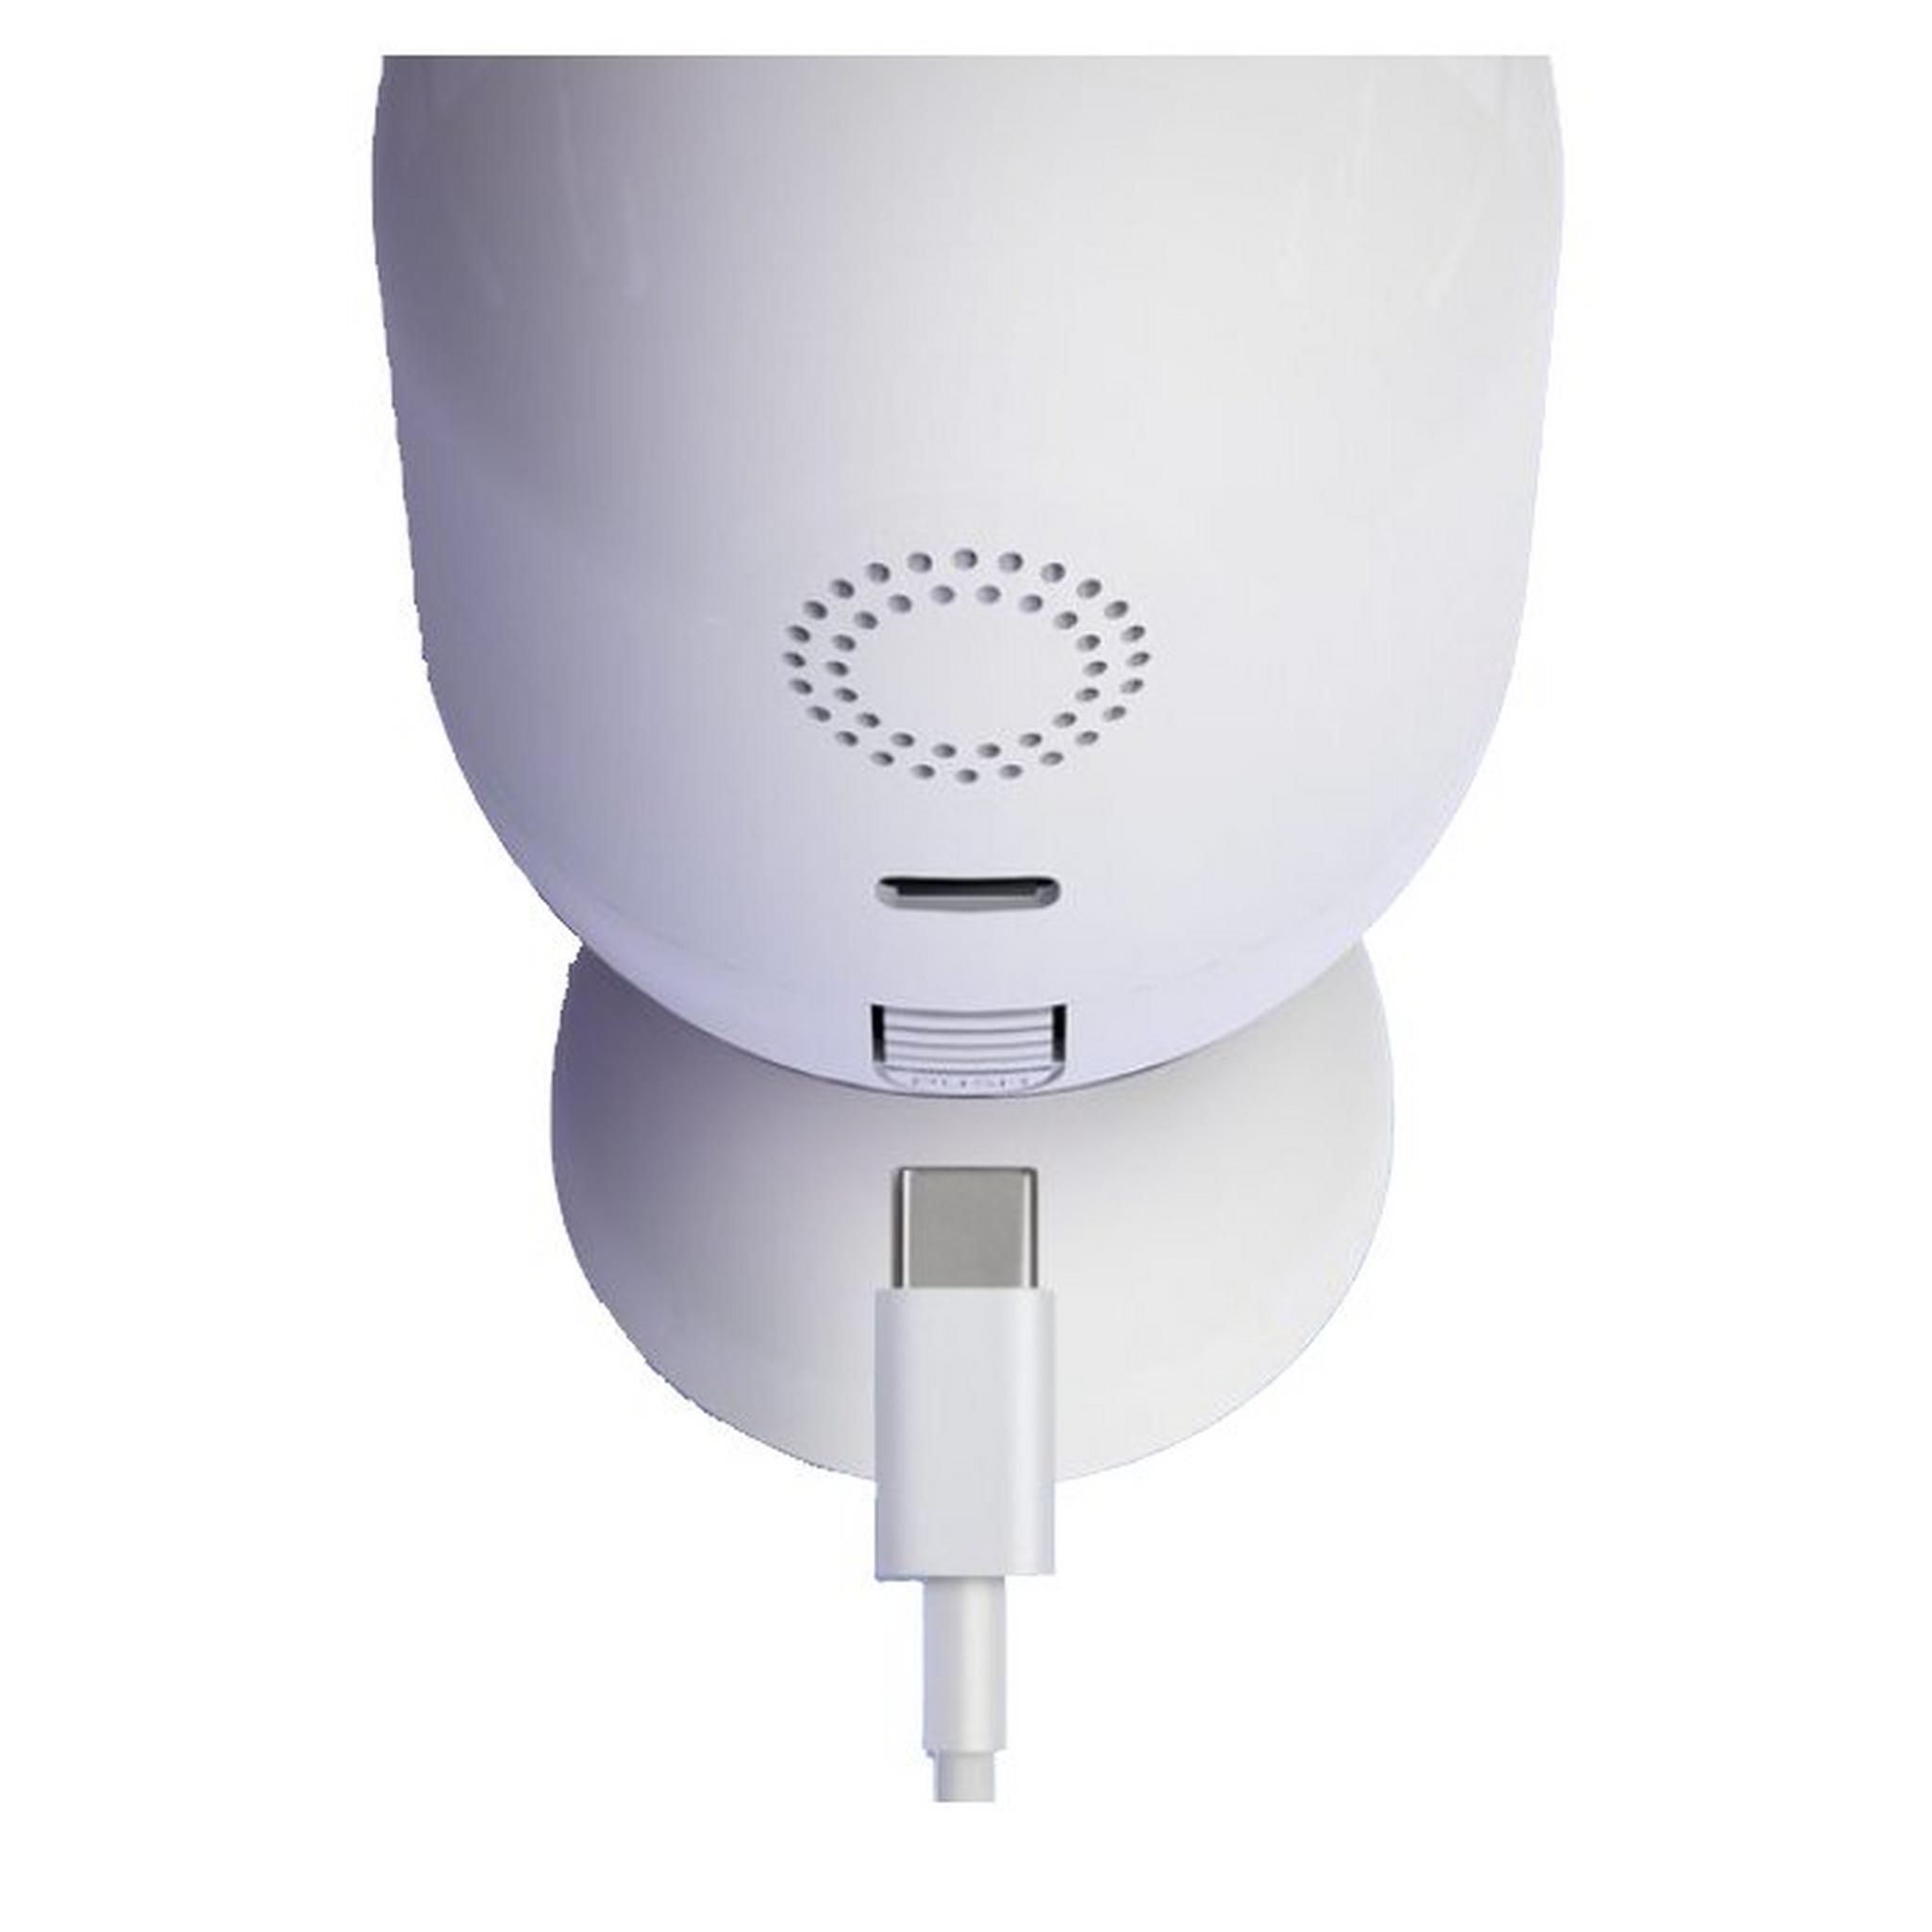 Laxihub Indoor Wi-Fi 1080P Mini Camera (UK-GL)